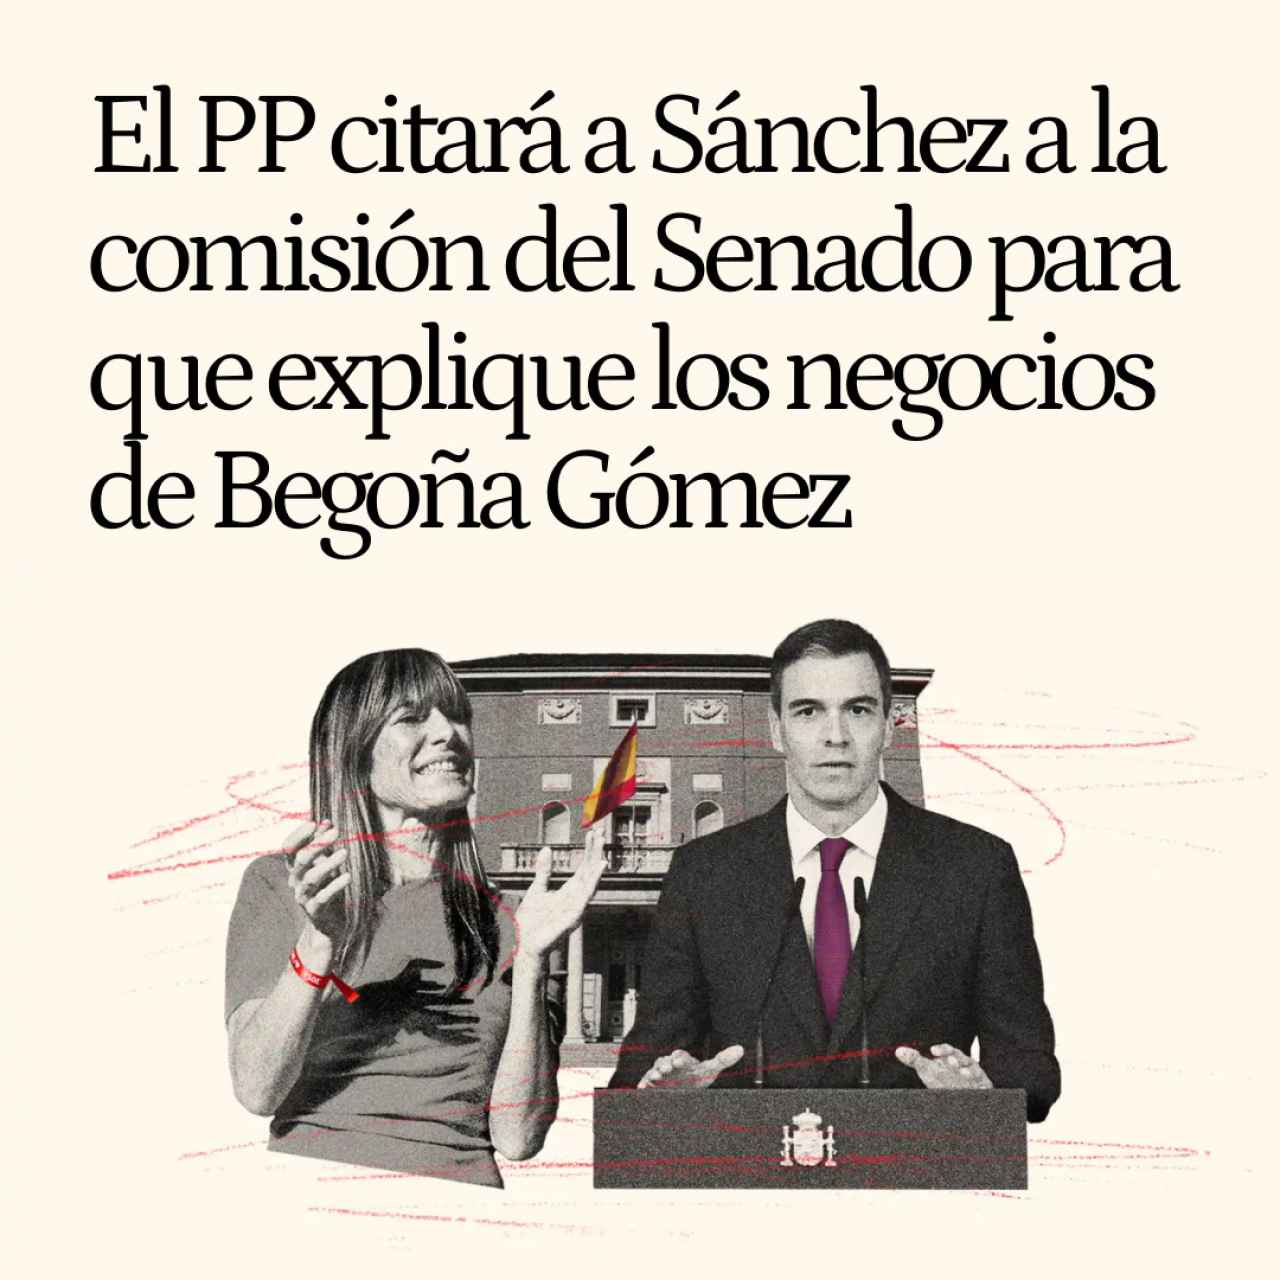 El PP citará a Sánchez a la comisión del Senado para que explique los negocios de Begoña Gómez